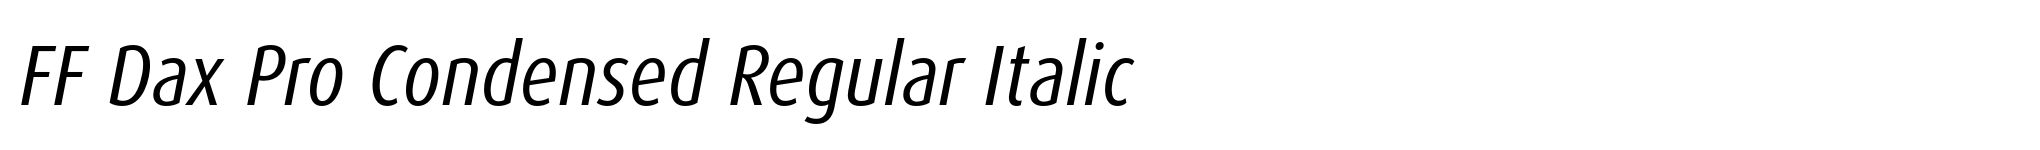 FF Dax Pro Condensed Regular Italic image